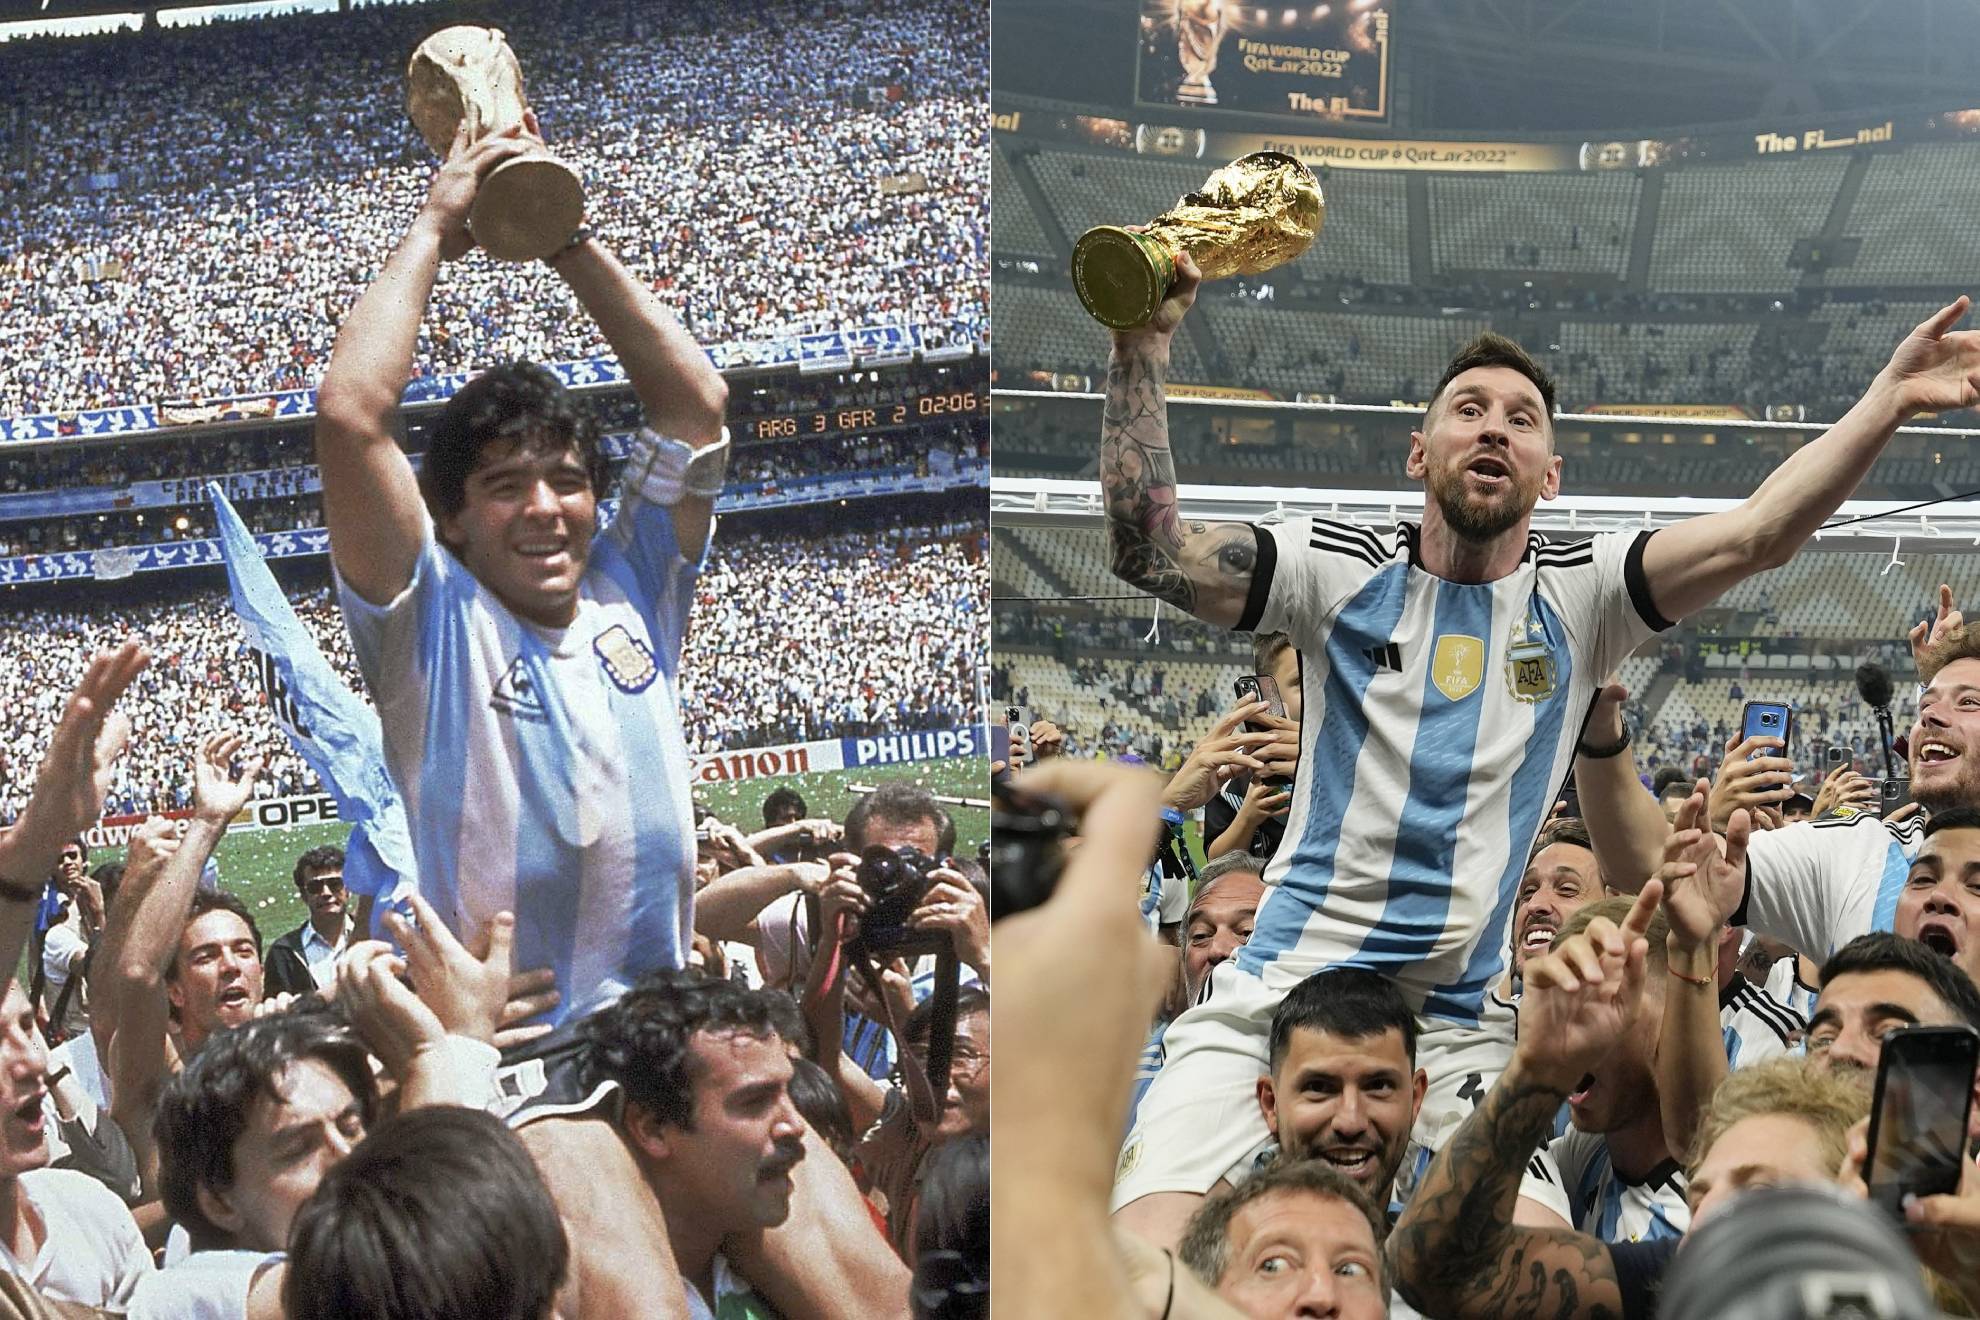 Hãy chiêm ngưỡng vẻ đẹp của niềm vui và sự hào hứng khi Messi và đội tuyển Argentina giành chiến thắng vô địch World Cup, tạo thêm một huyền thoại trong lịch sử bóng đá.